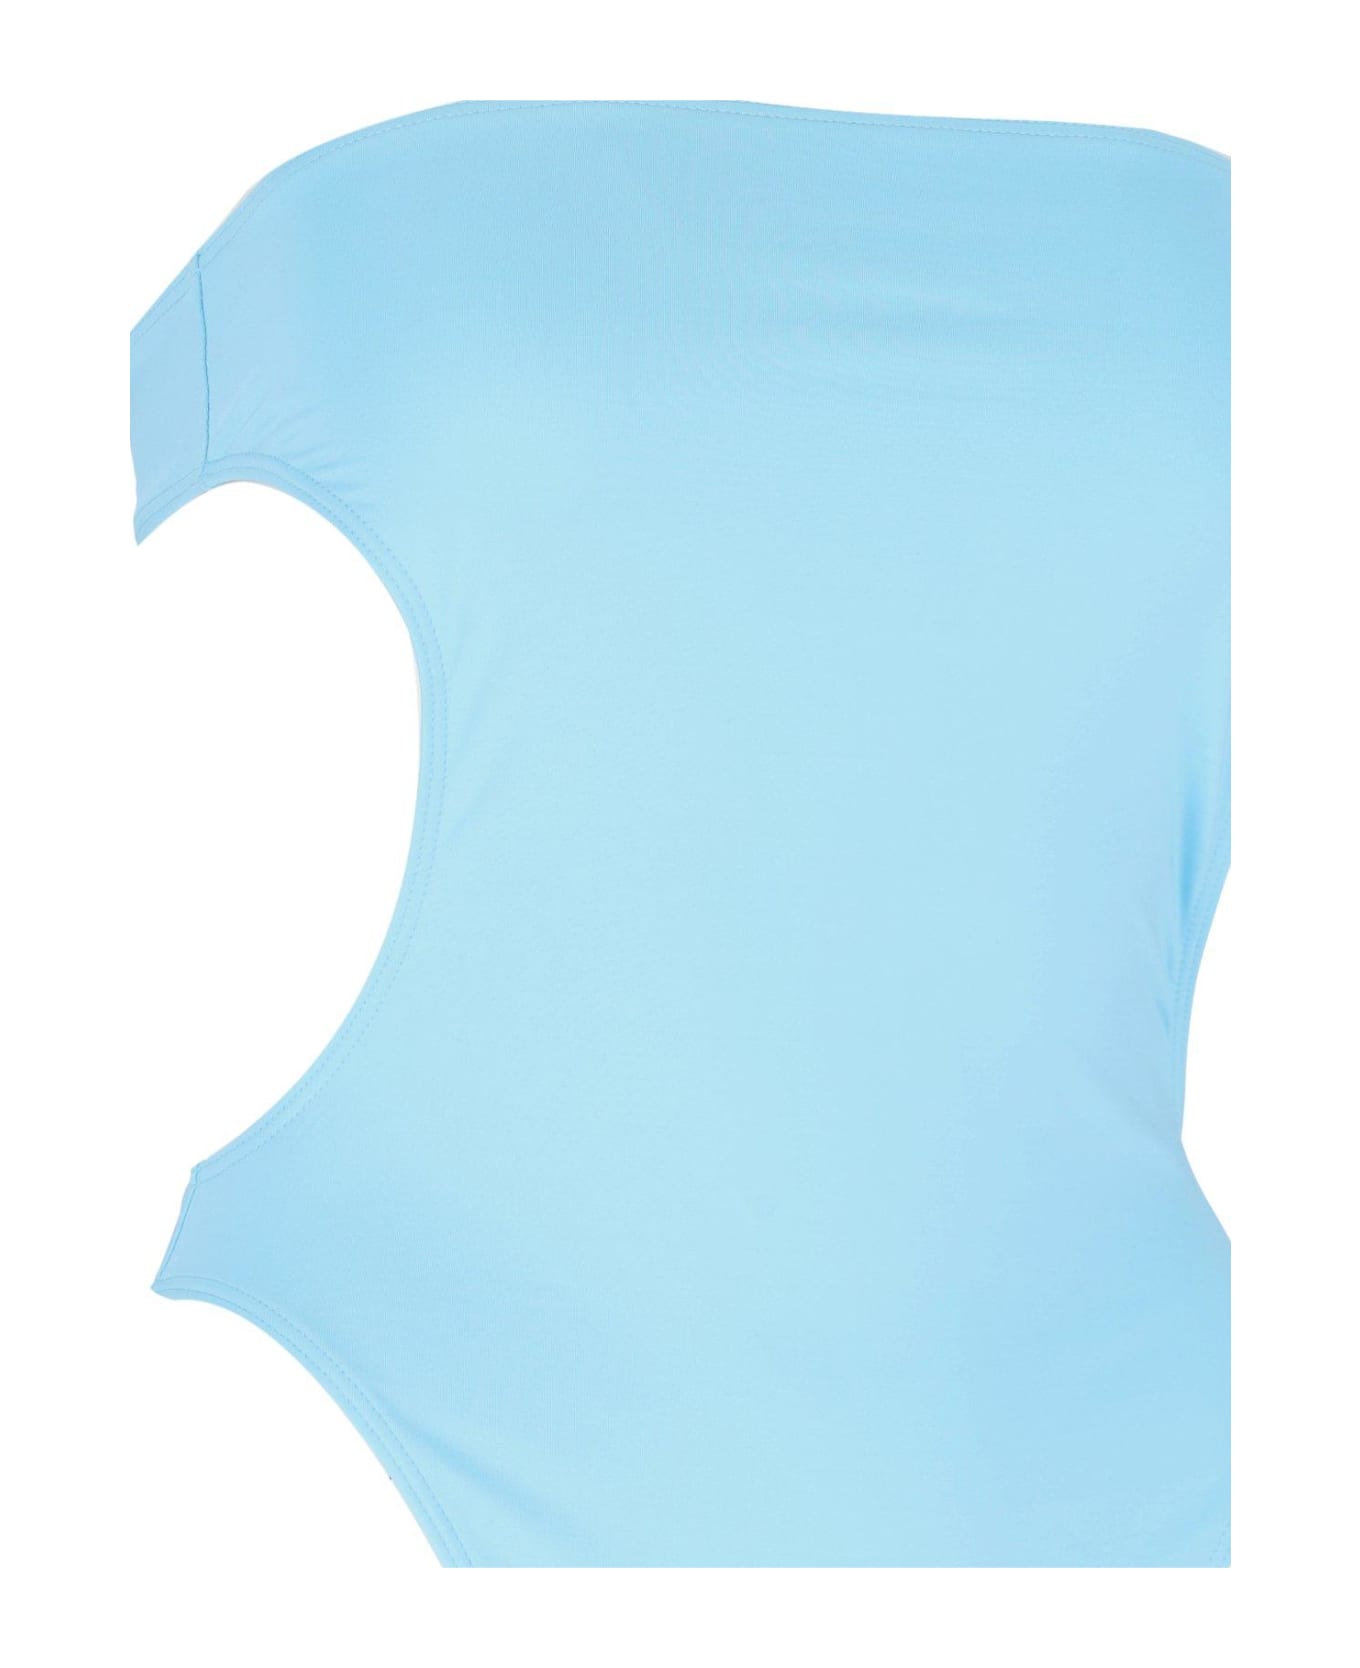 Saint Laurent Strapless Cut-out Swimsuit - Azzurro